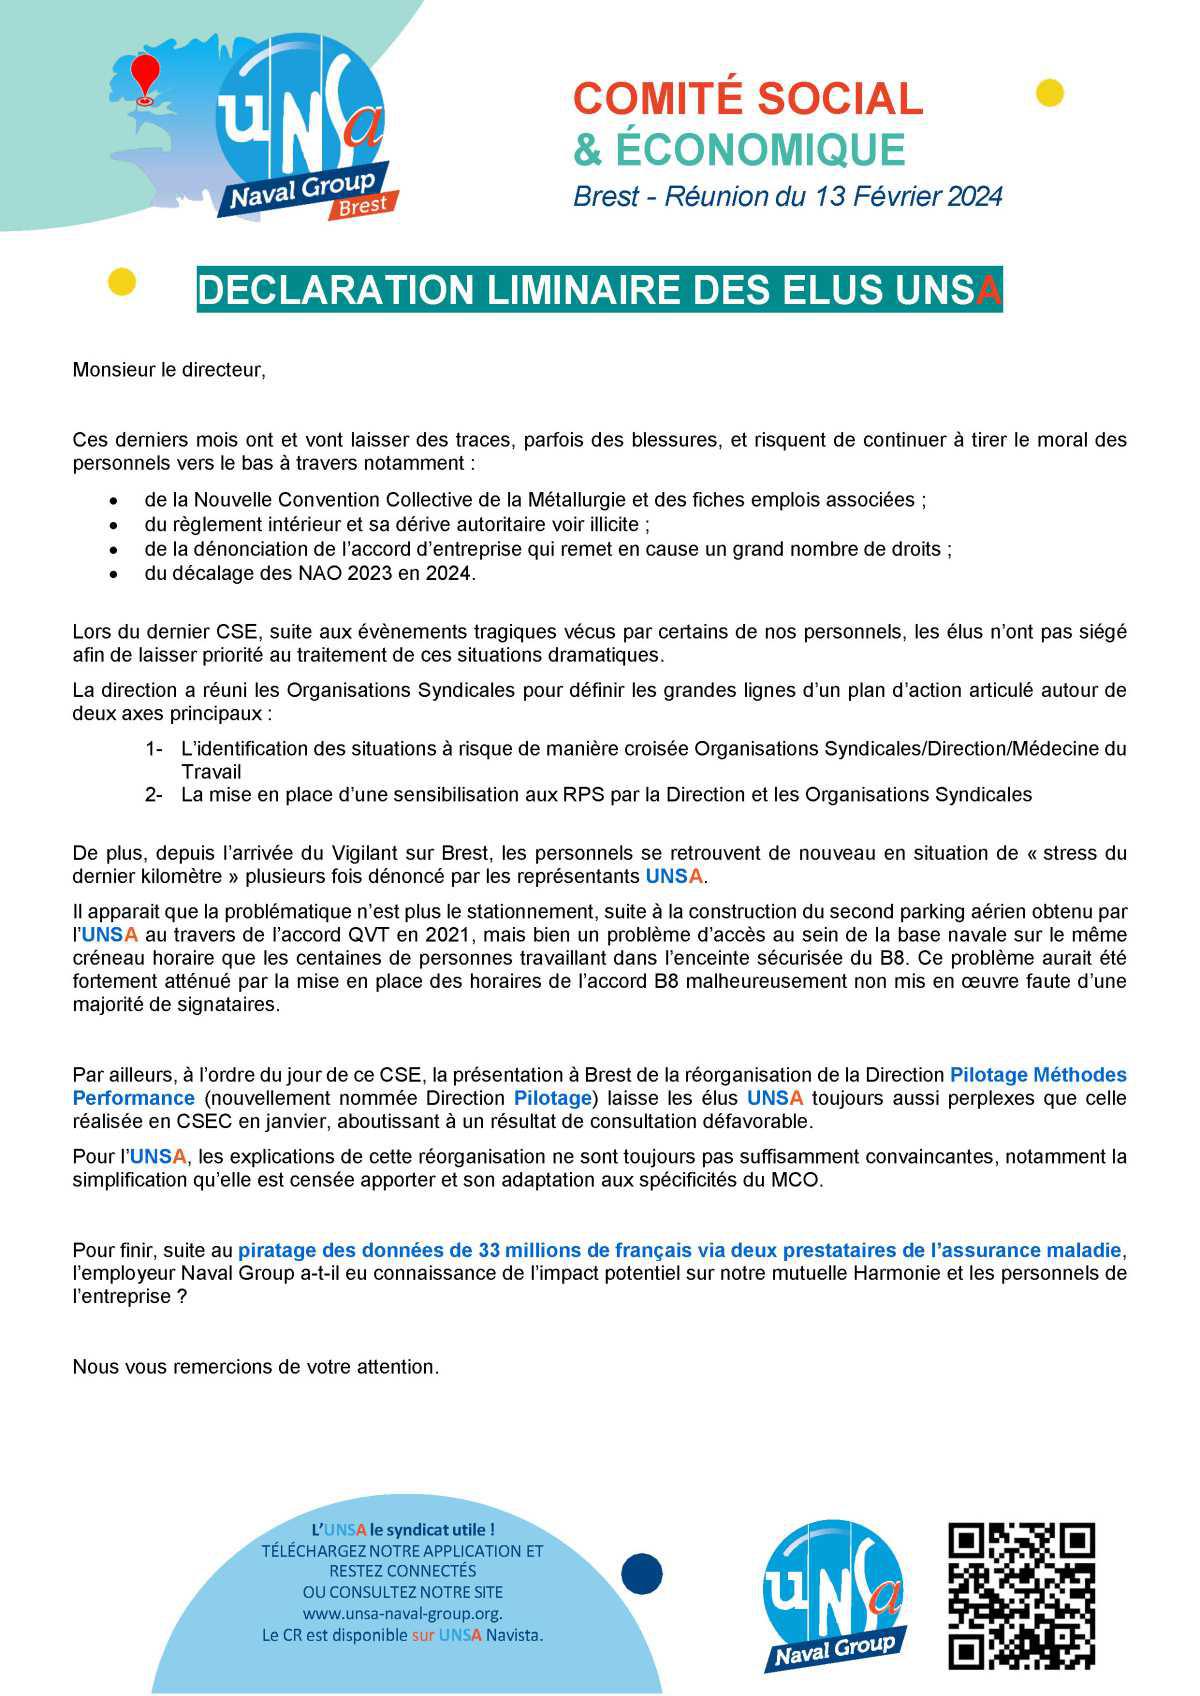 CSE de Brest - Réunion 13 février 2024 - Déclaration liminaire